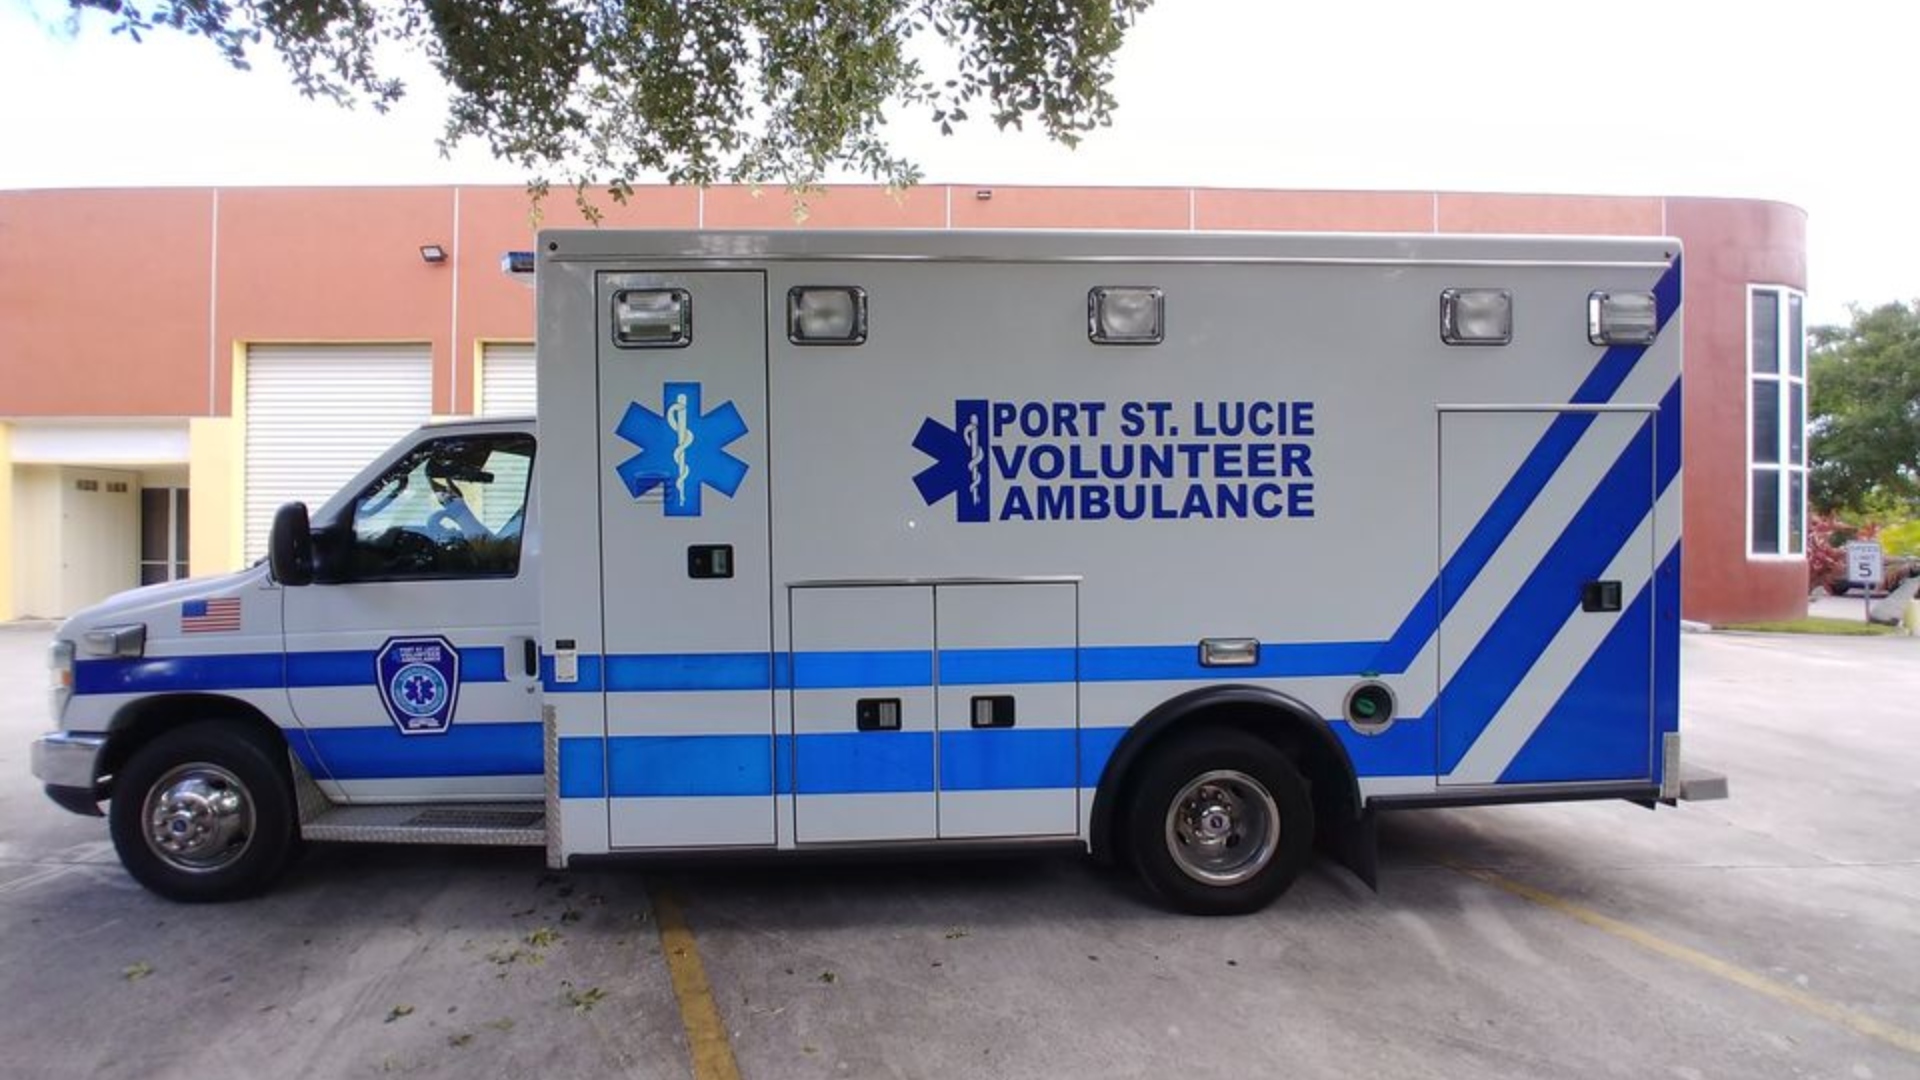 Servicio de ambulancia voluntaria y gratuita de Port St. Lucie necesita apoyo